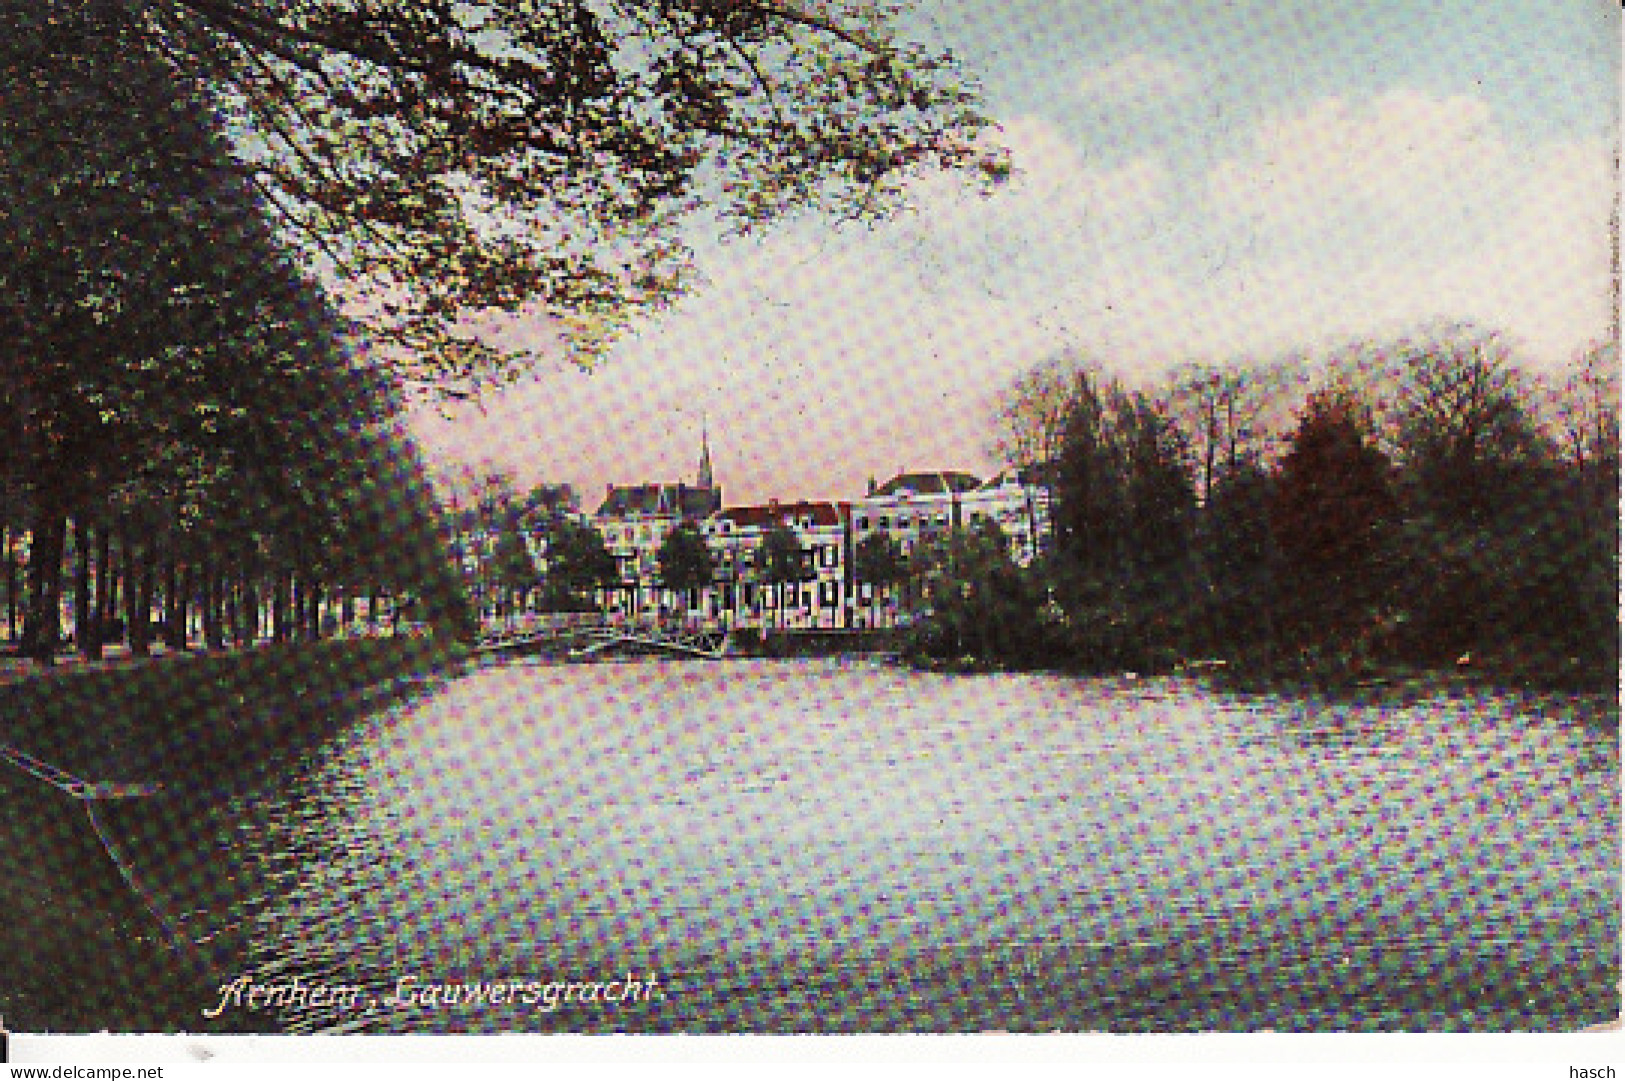 258966Arnhem, Lauwersgracht 1910 - Arnhem